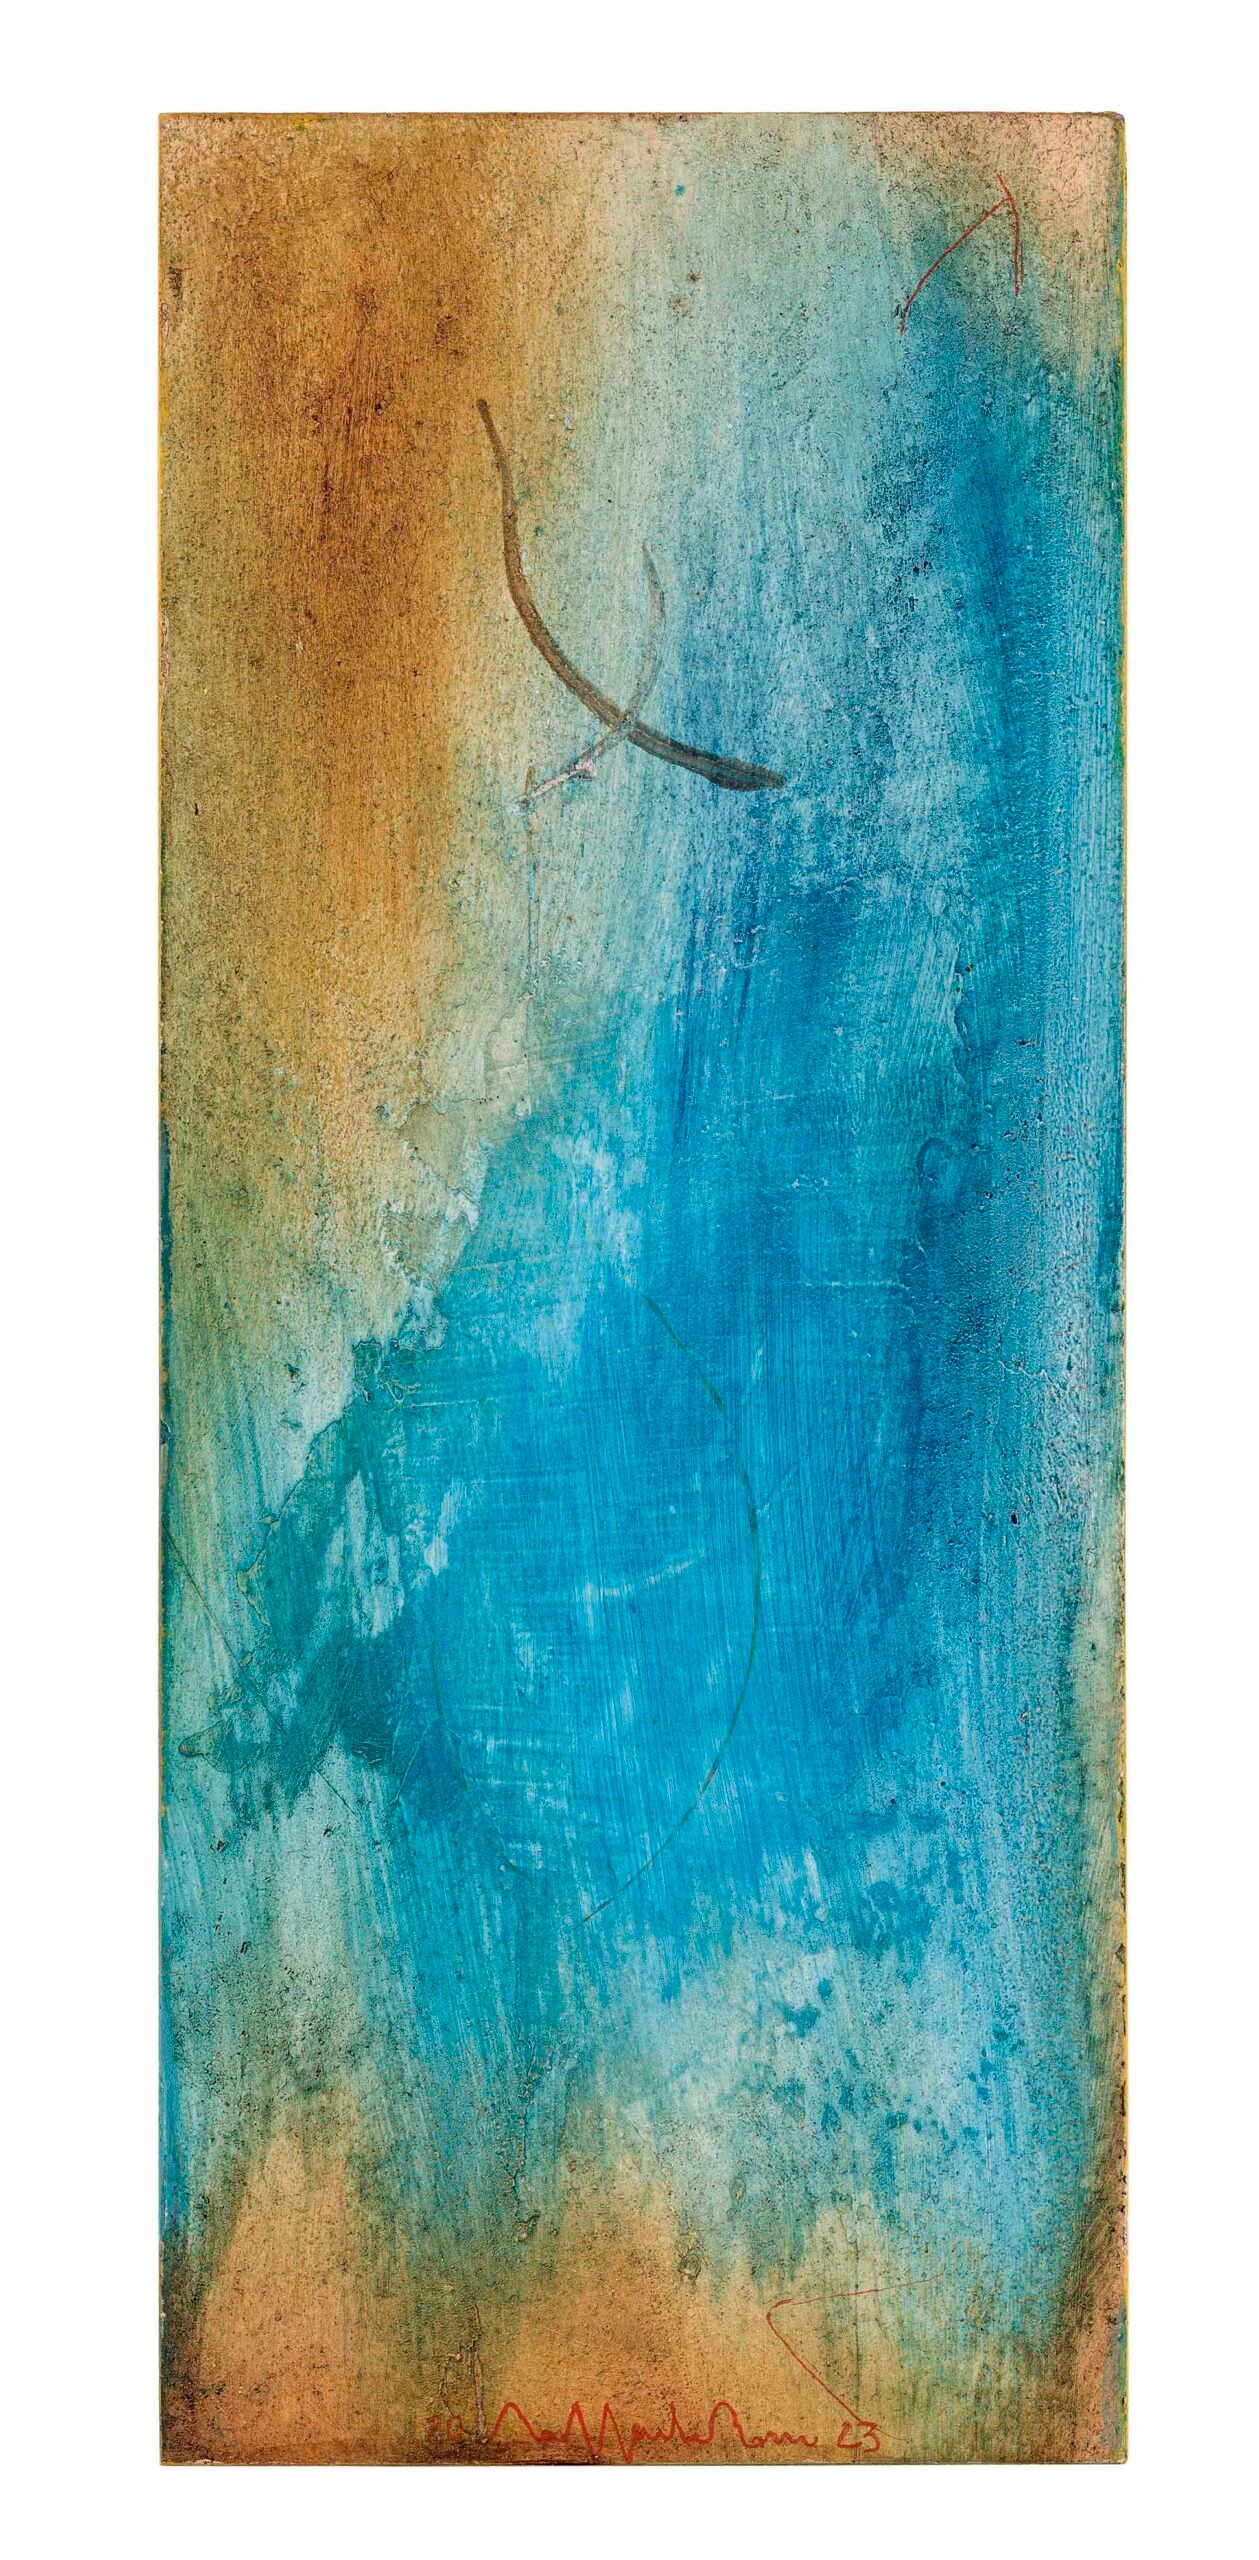 “Paesaggio dell’anima mia”, 2022 - tecnica mista su legno / mixer media on wood - cm. 36,9 x 15,2 x 9 